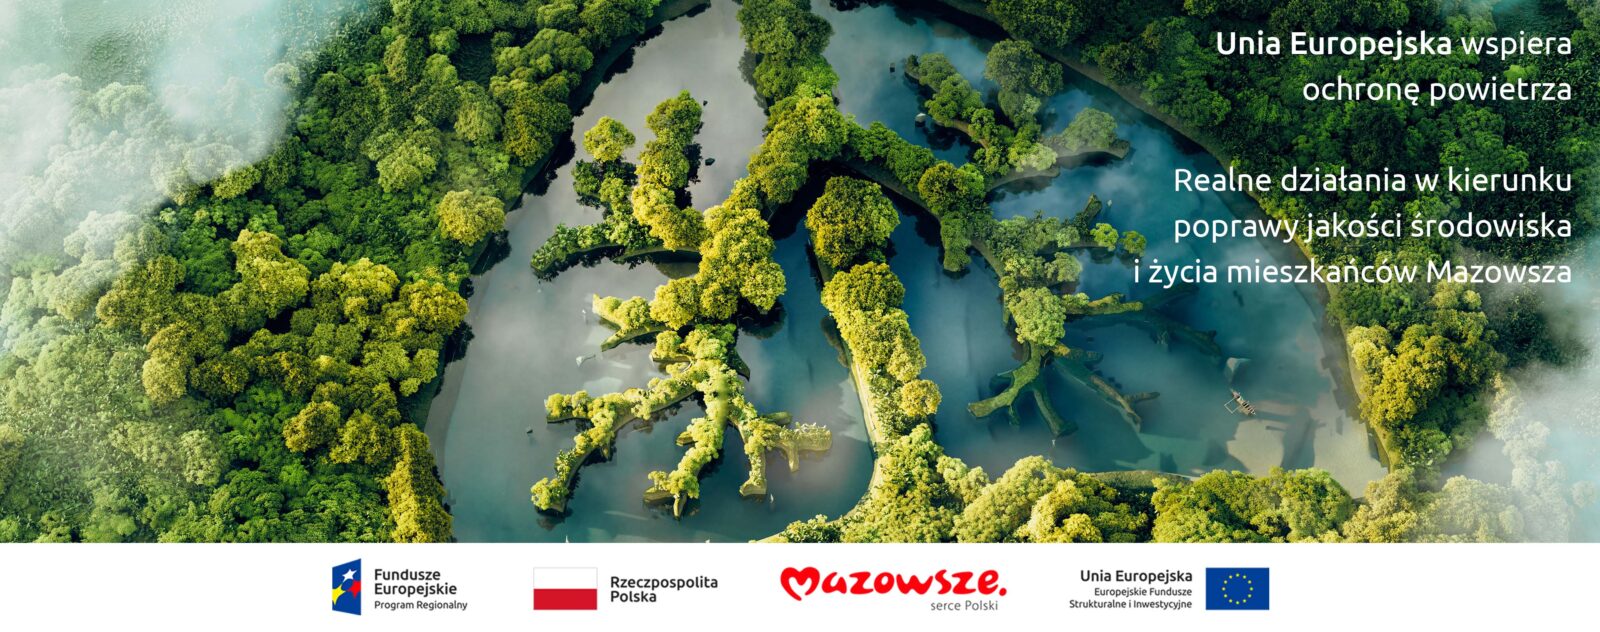 Grafika przedstawia napis Unia Europejska wspiera ochronę powietrza, Realne działania w kierunku poprawy jakości środowiska i życia mieszkańców Mazowsza. W tle widać drzewa z lotu ptaka, niektóre z nich stoją w mętnej wodzie.